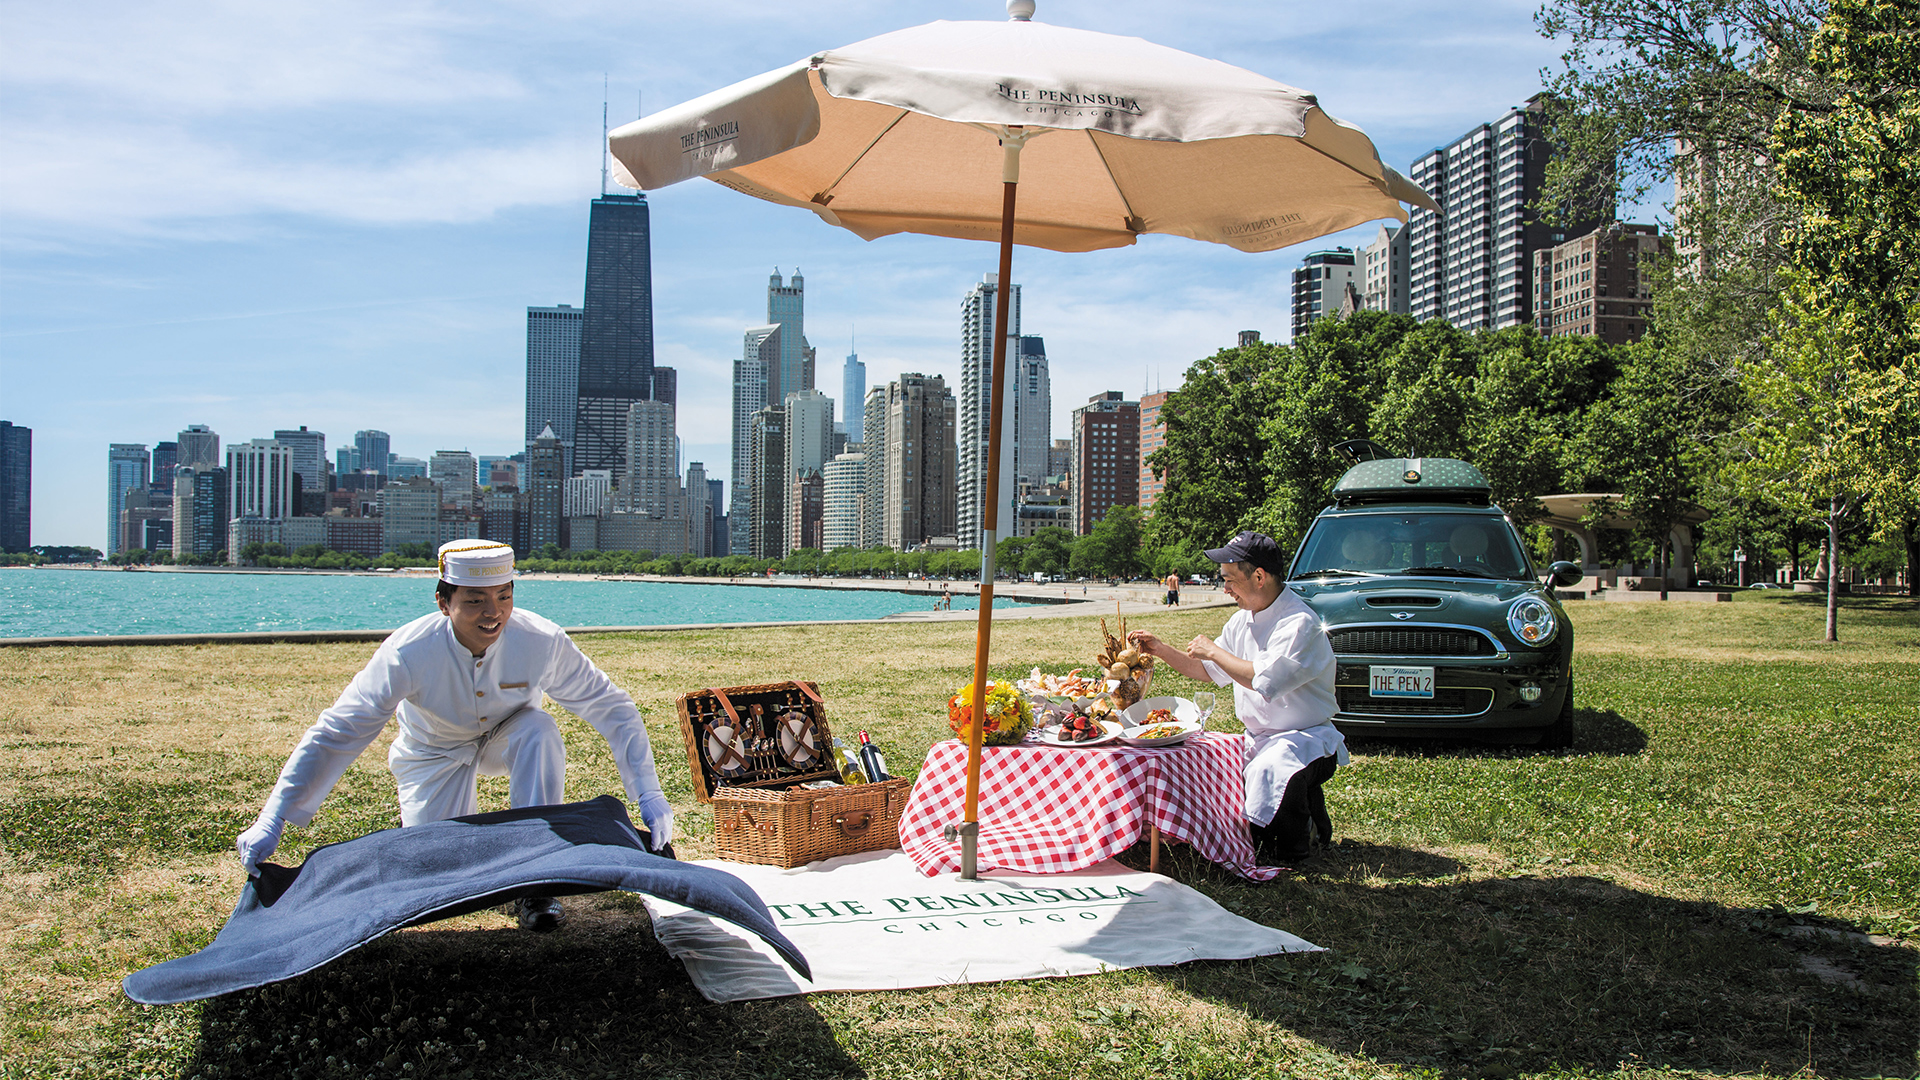 Private picnic romance courtesy of The Peninsula Chicago